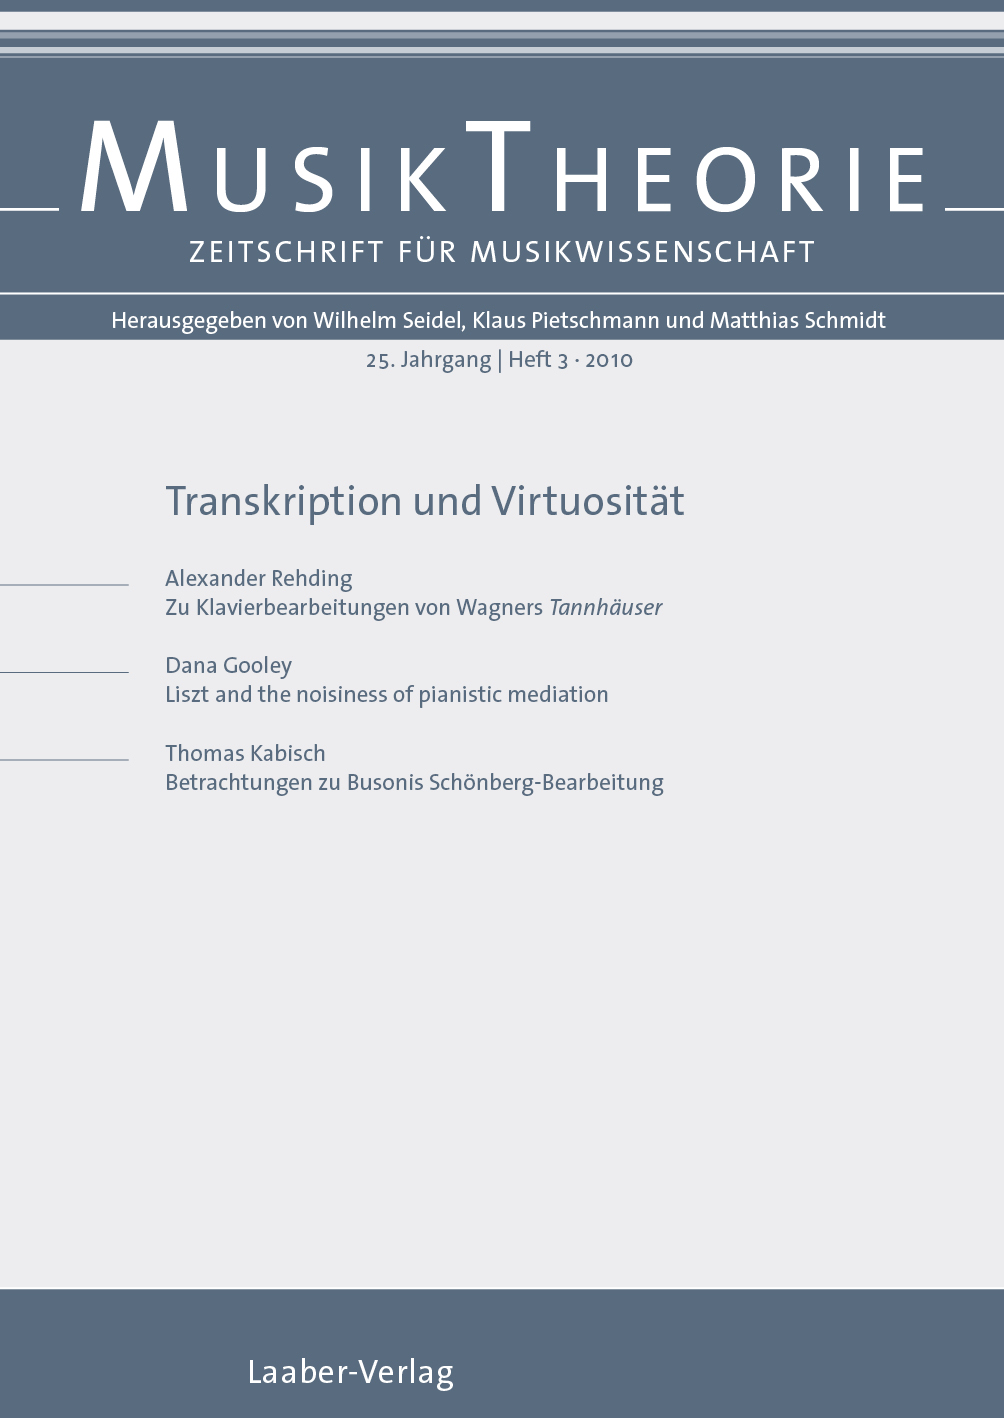 Musiktheorie Heft 3/2010